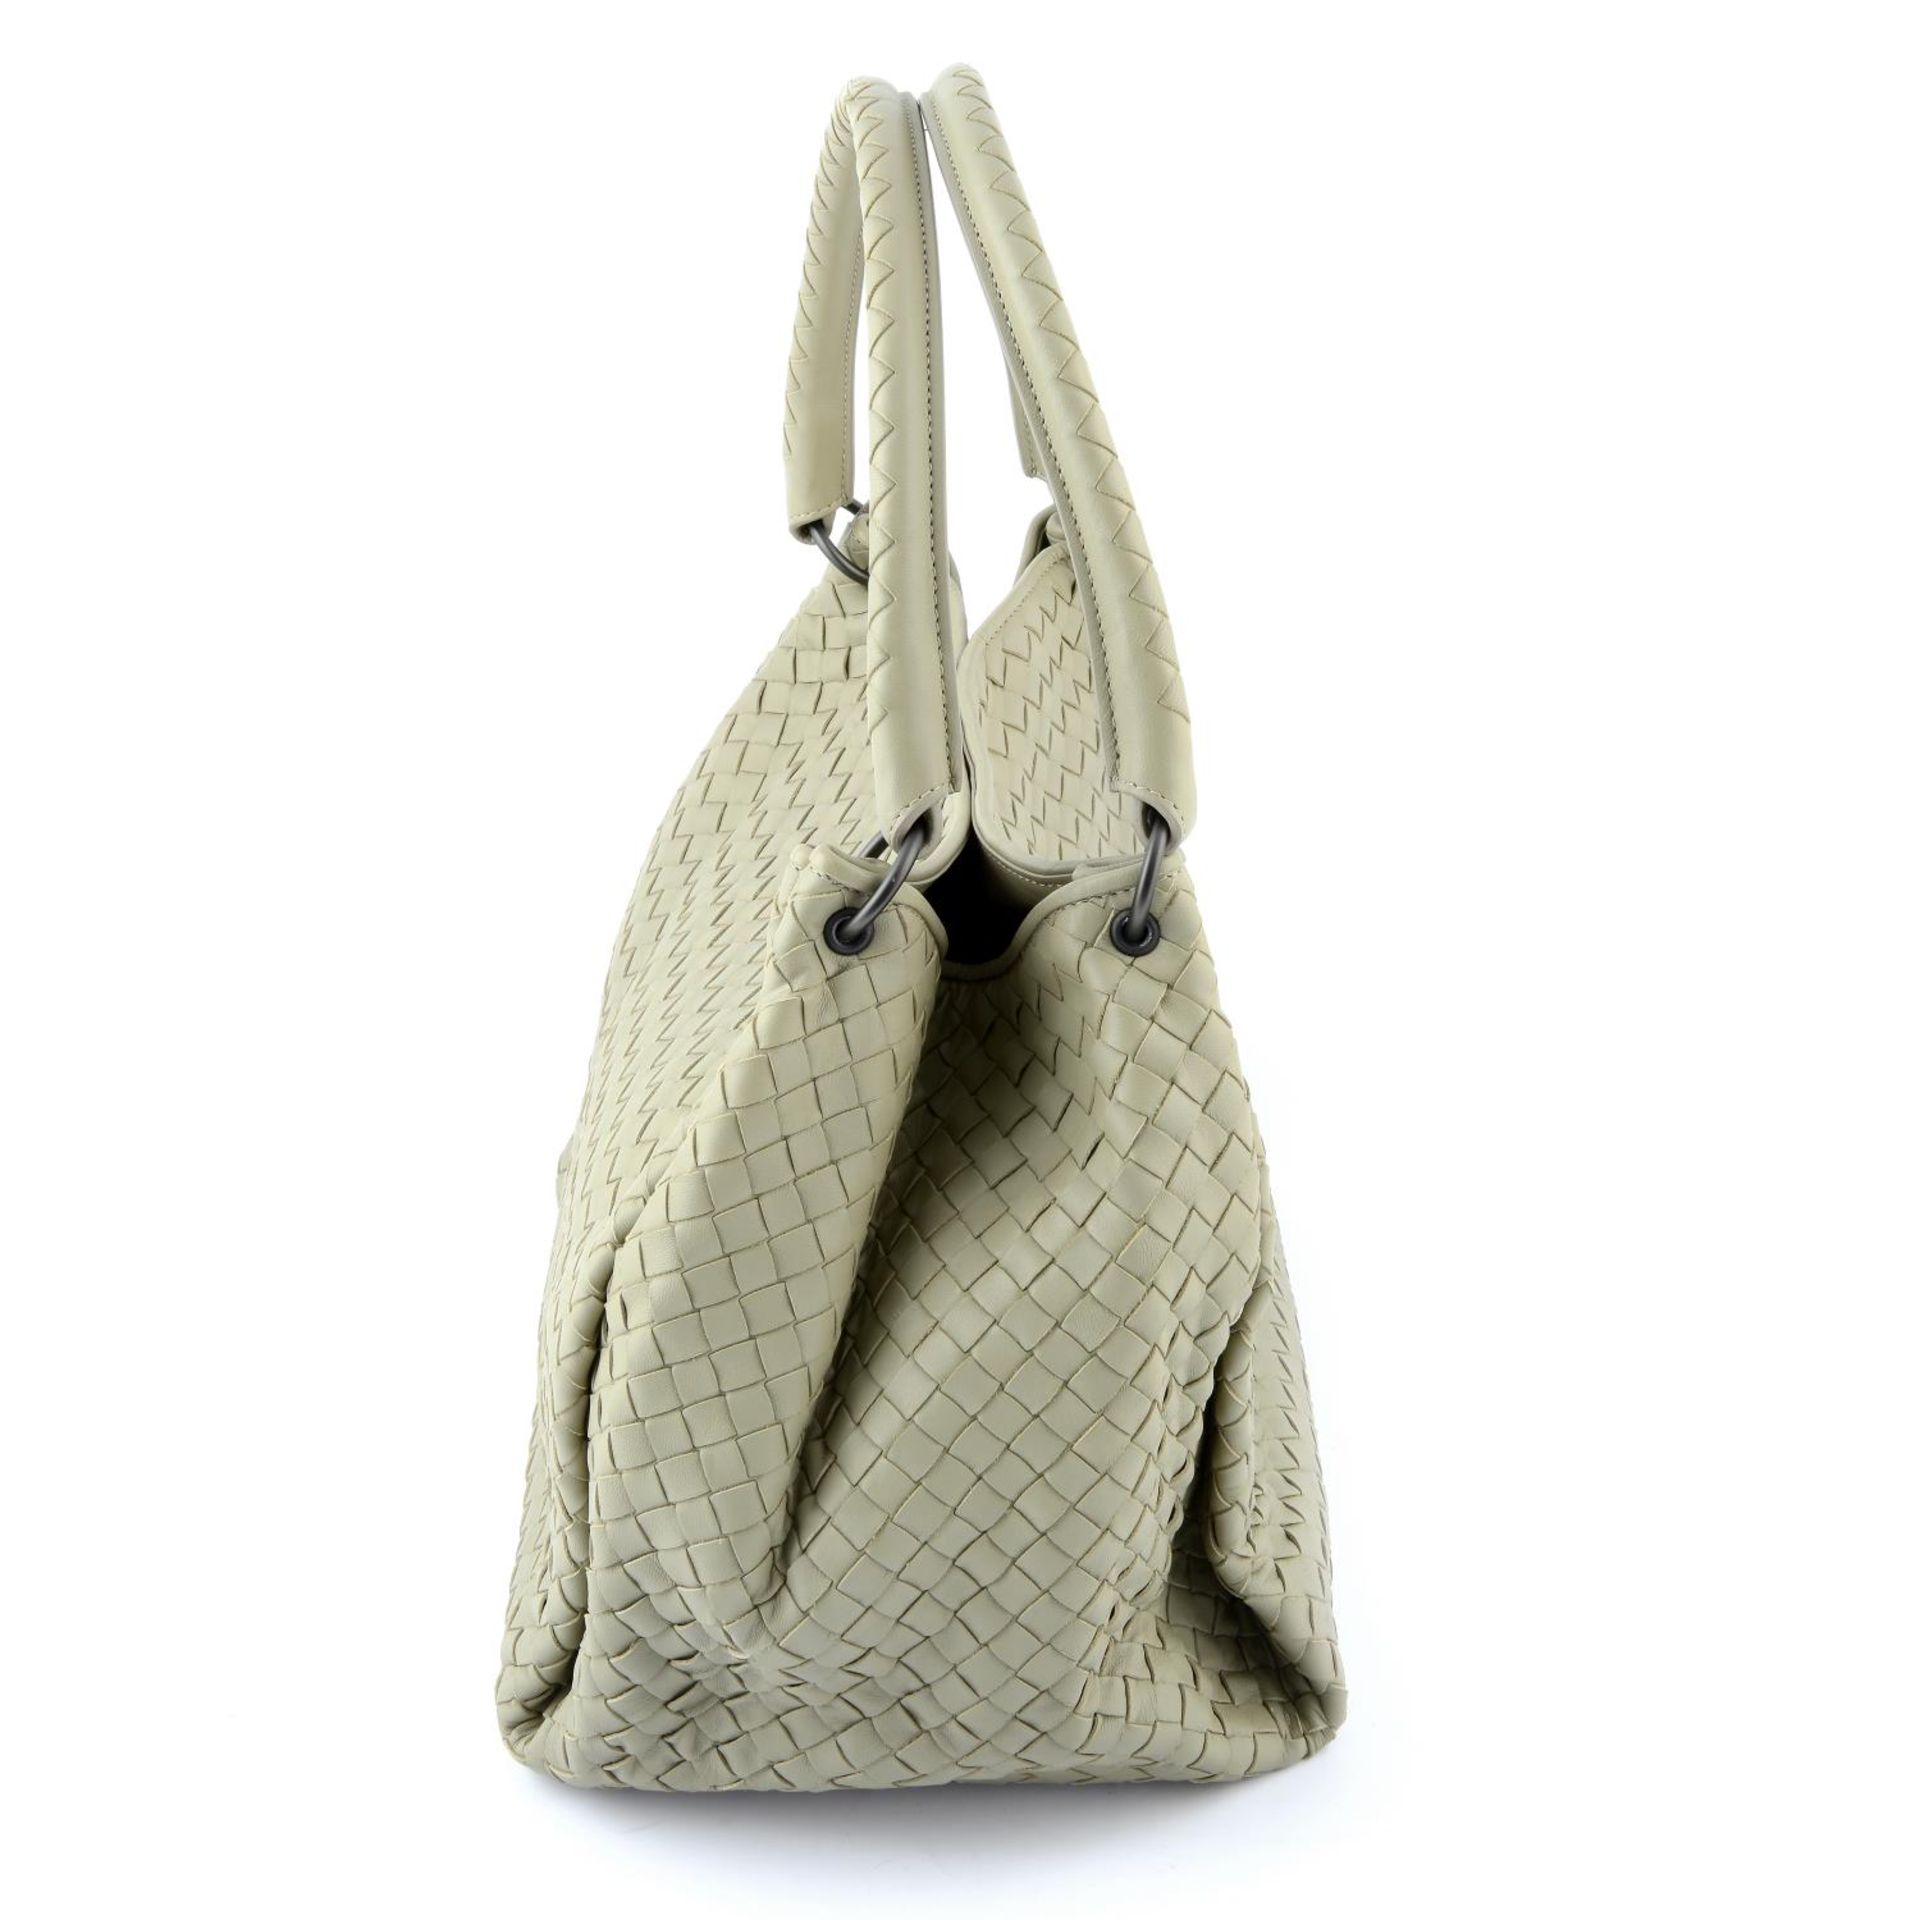 BOTTEGA VENETA - an Intrecciato top handle handbag. - Bild 4 aus 5